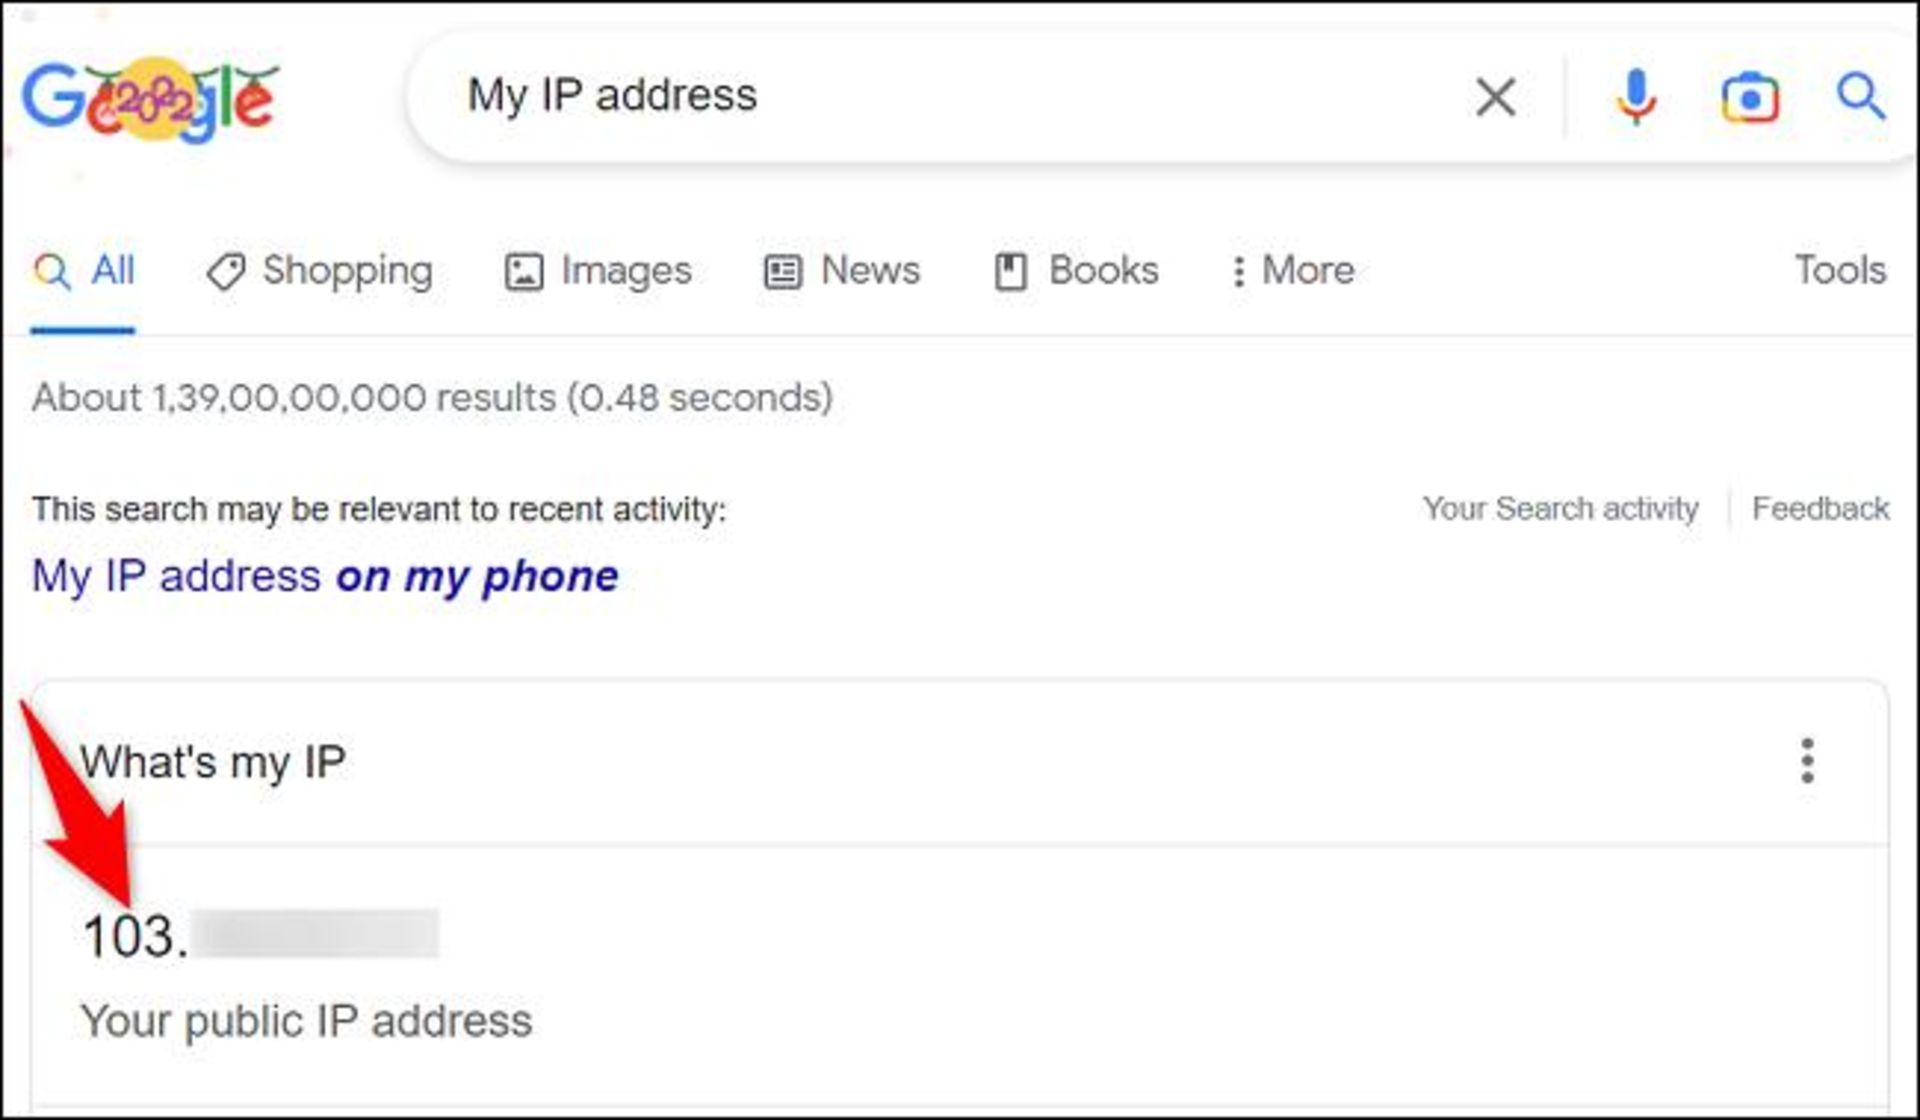 قابلیت مشاهده آدرس IP عمومی ازطریق گوگل